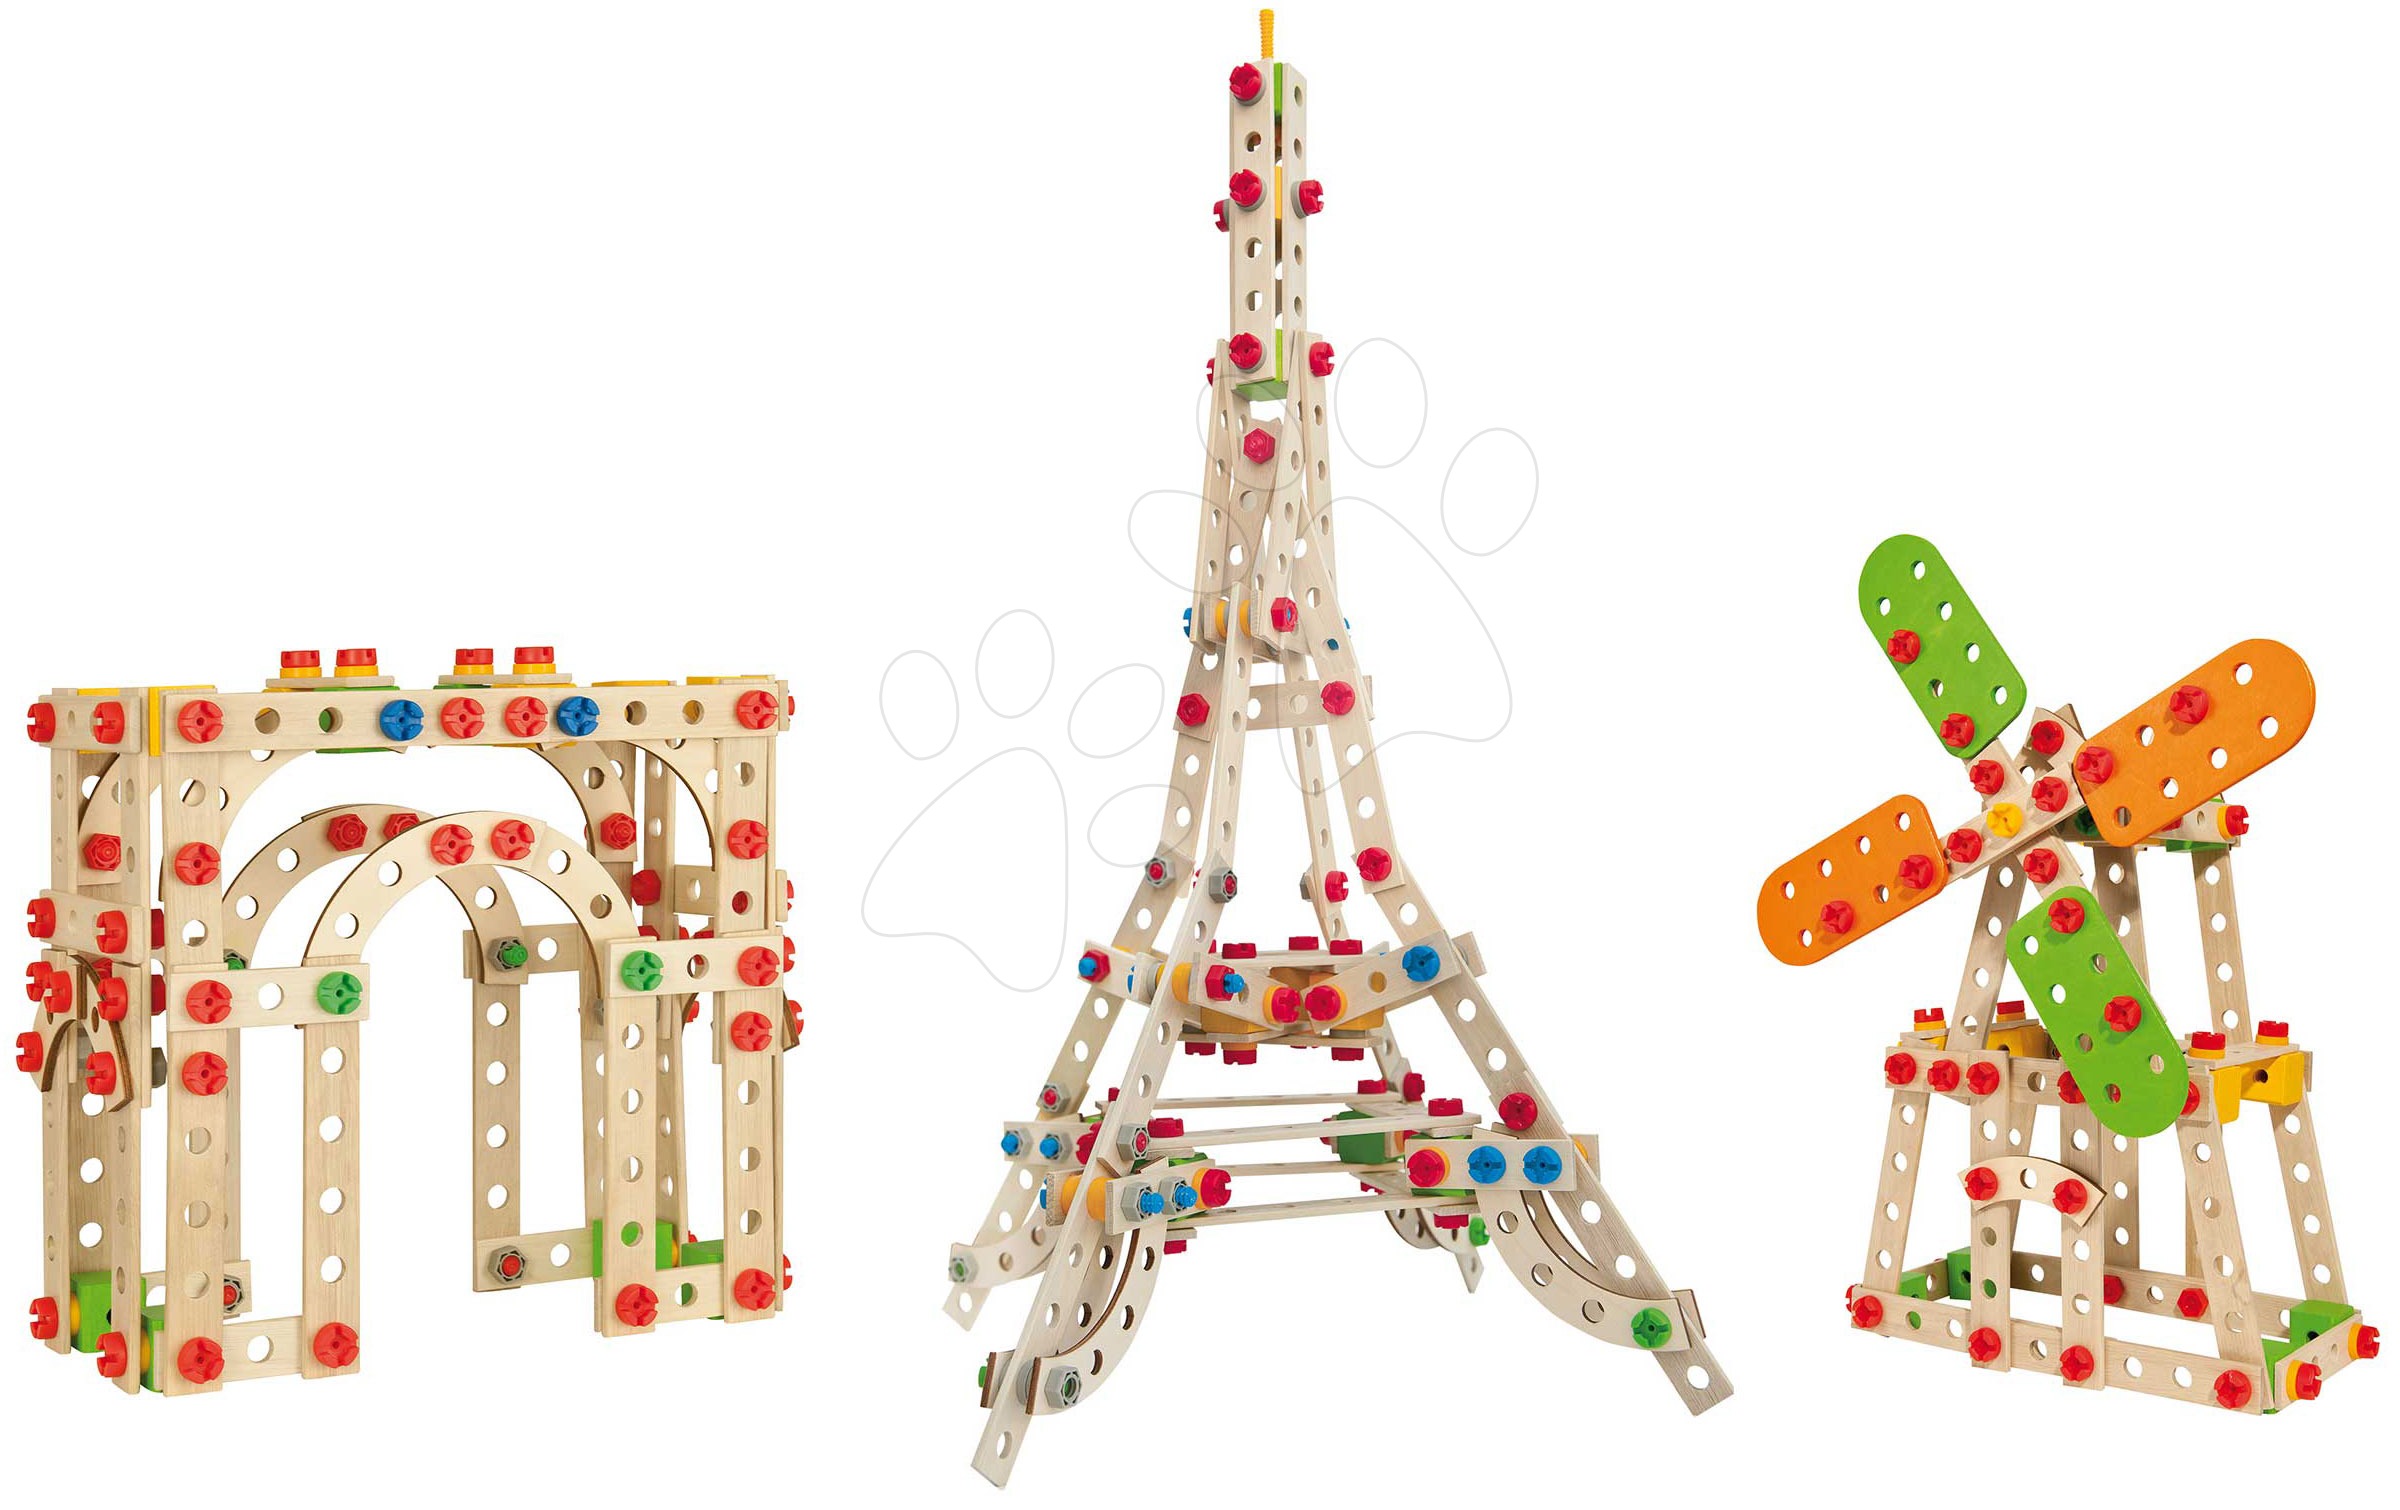 Dřevěné stavebnice Eichhorn - Dřevěná stavebnice Eiffelova věž Constructor Eiffel Tower Eichhorn 3 modely (Eiffelova věž, větrný mlýn, Vítězný oblouk) 315 dílů od 6 let